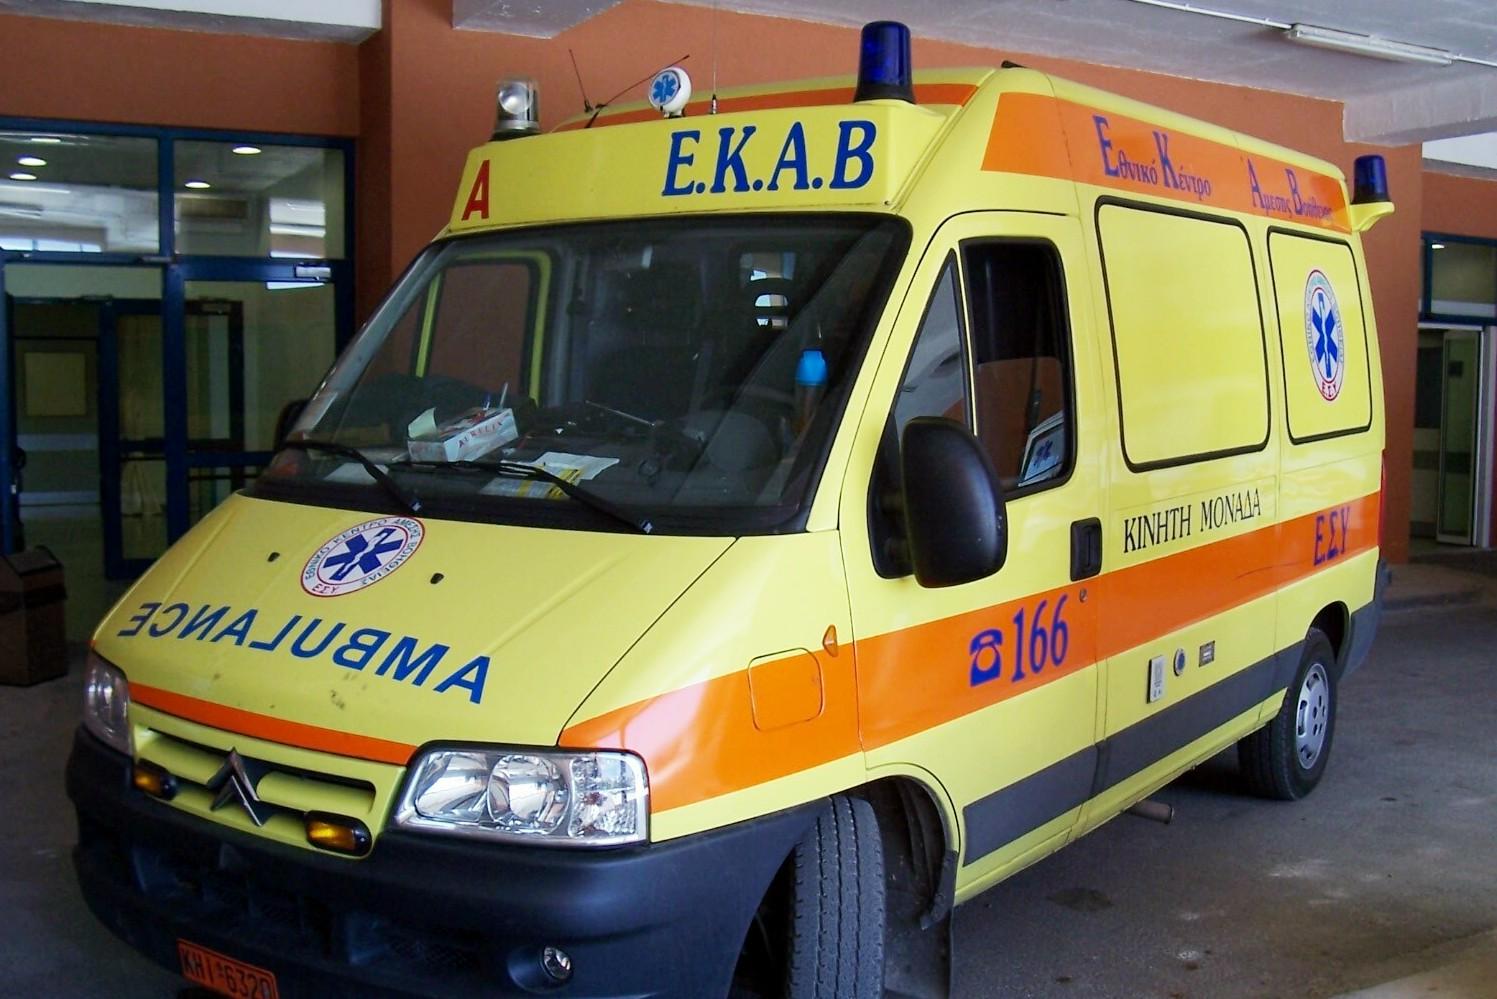 Θεσσαλονίκη: Γυναίκα έπεσε από αναβατόριο καταστήματος και τραυματίστηκε (φώτο)